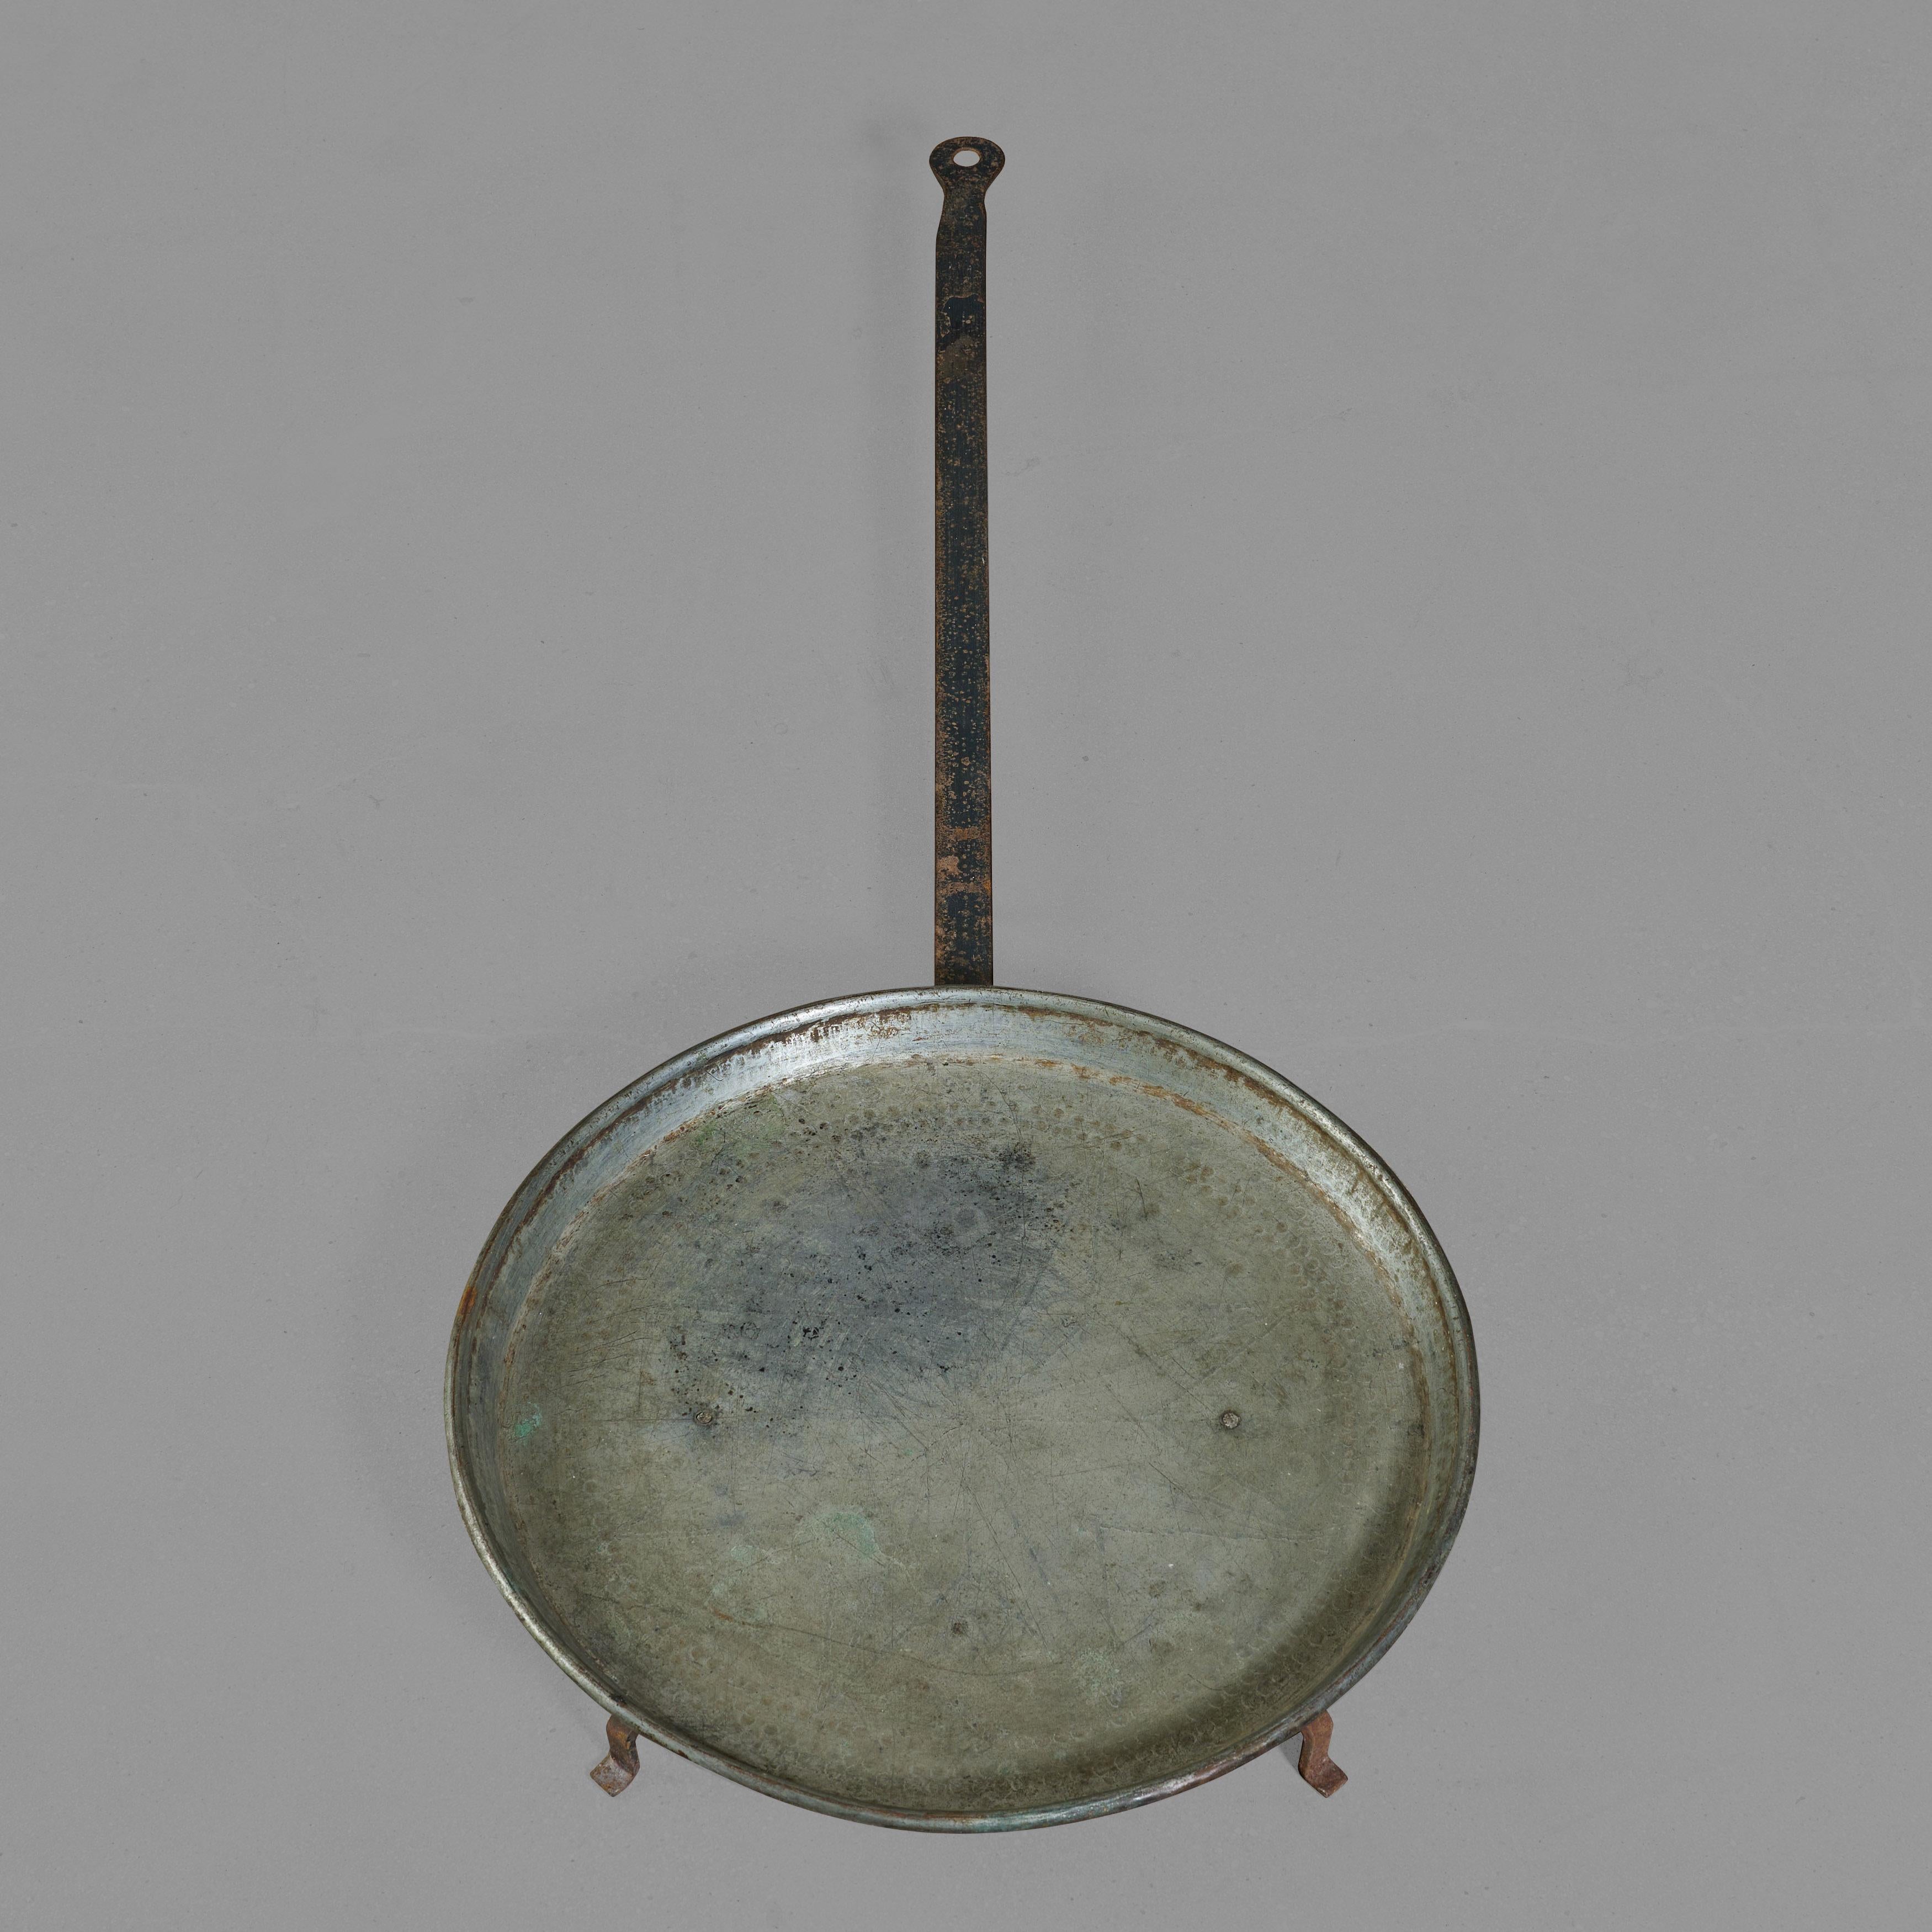 Paellapfanne aus Kupfer und Eisen mit dekorativer Schale und großem Griff.

